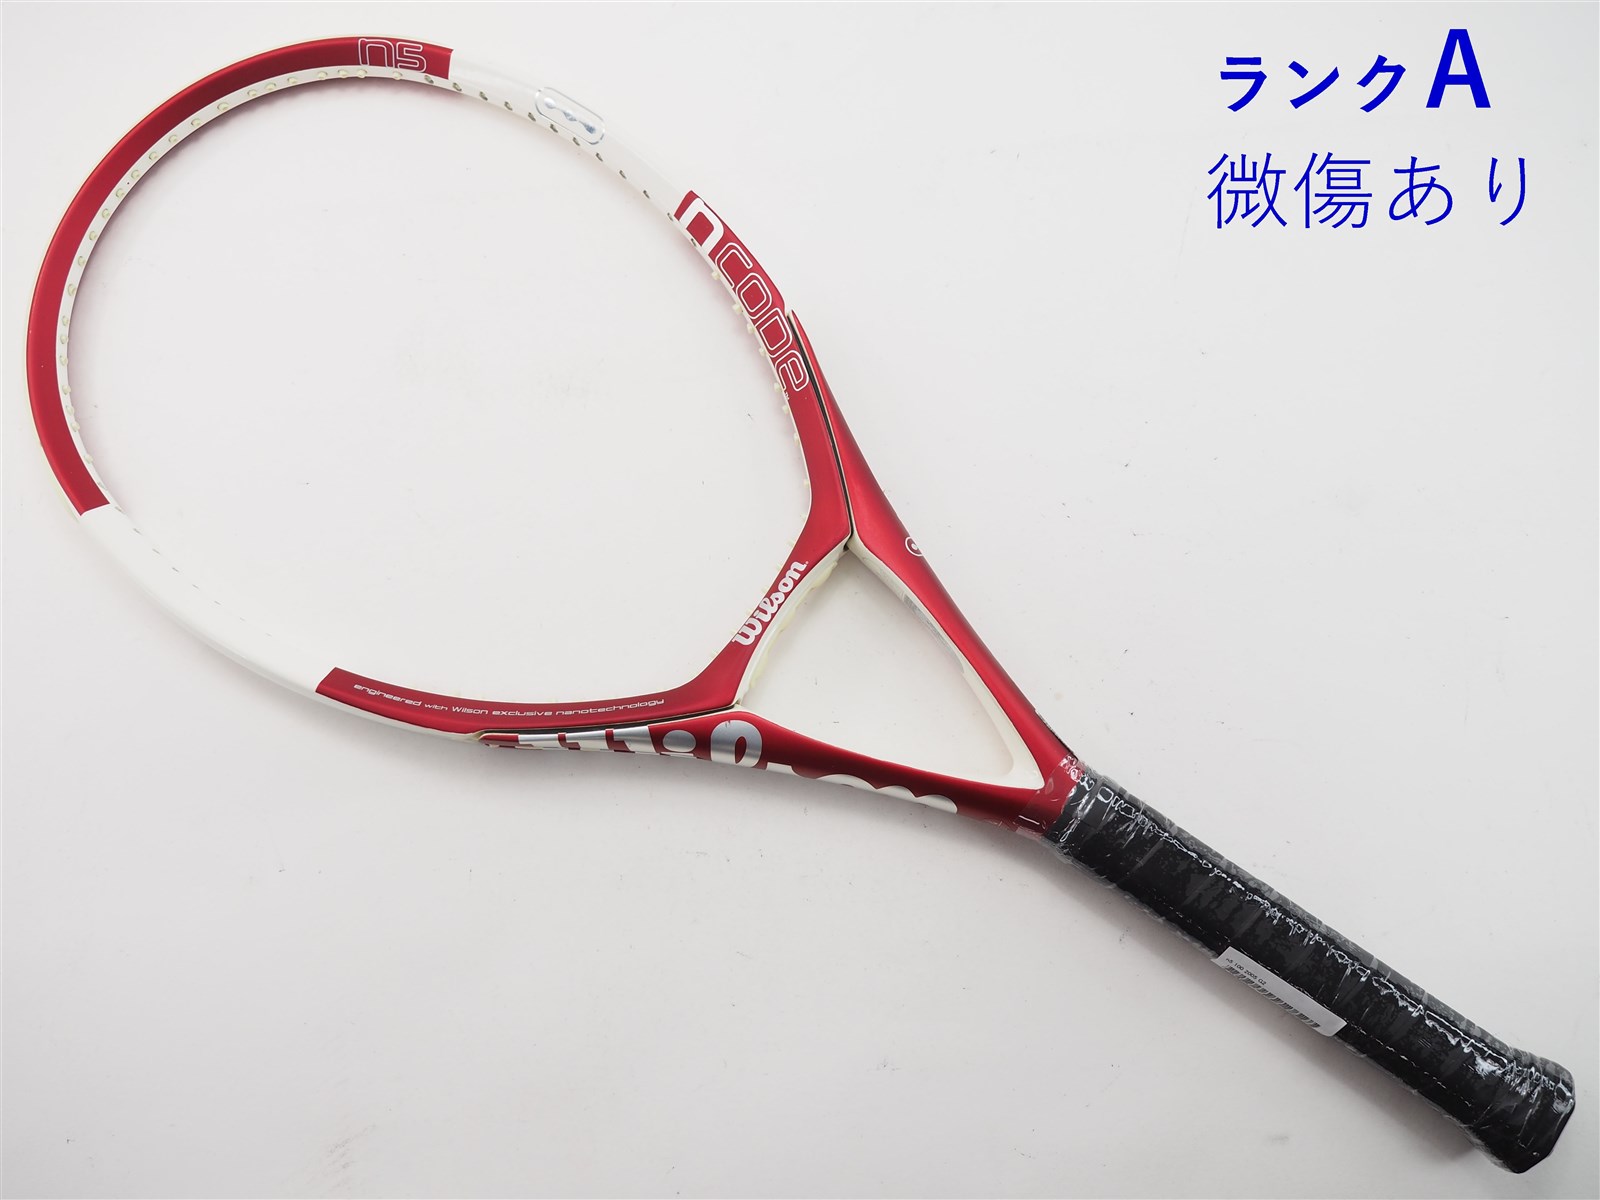 【中古】ウィルソン エヌ5 100 2005年モデルWILSON n5 100 2005(G2)【中古 テニスラケット】【送料無料】